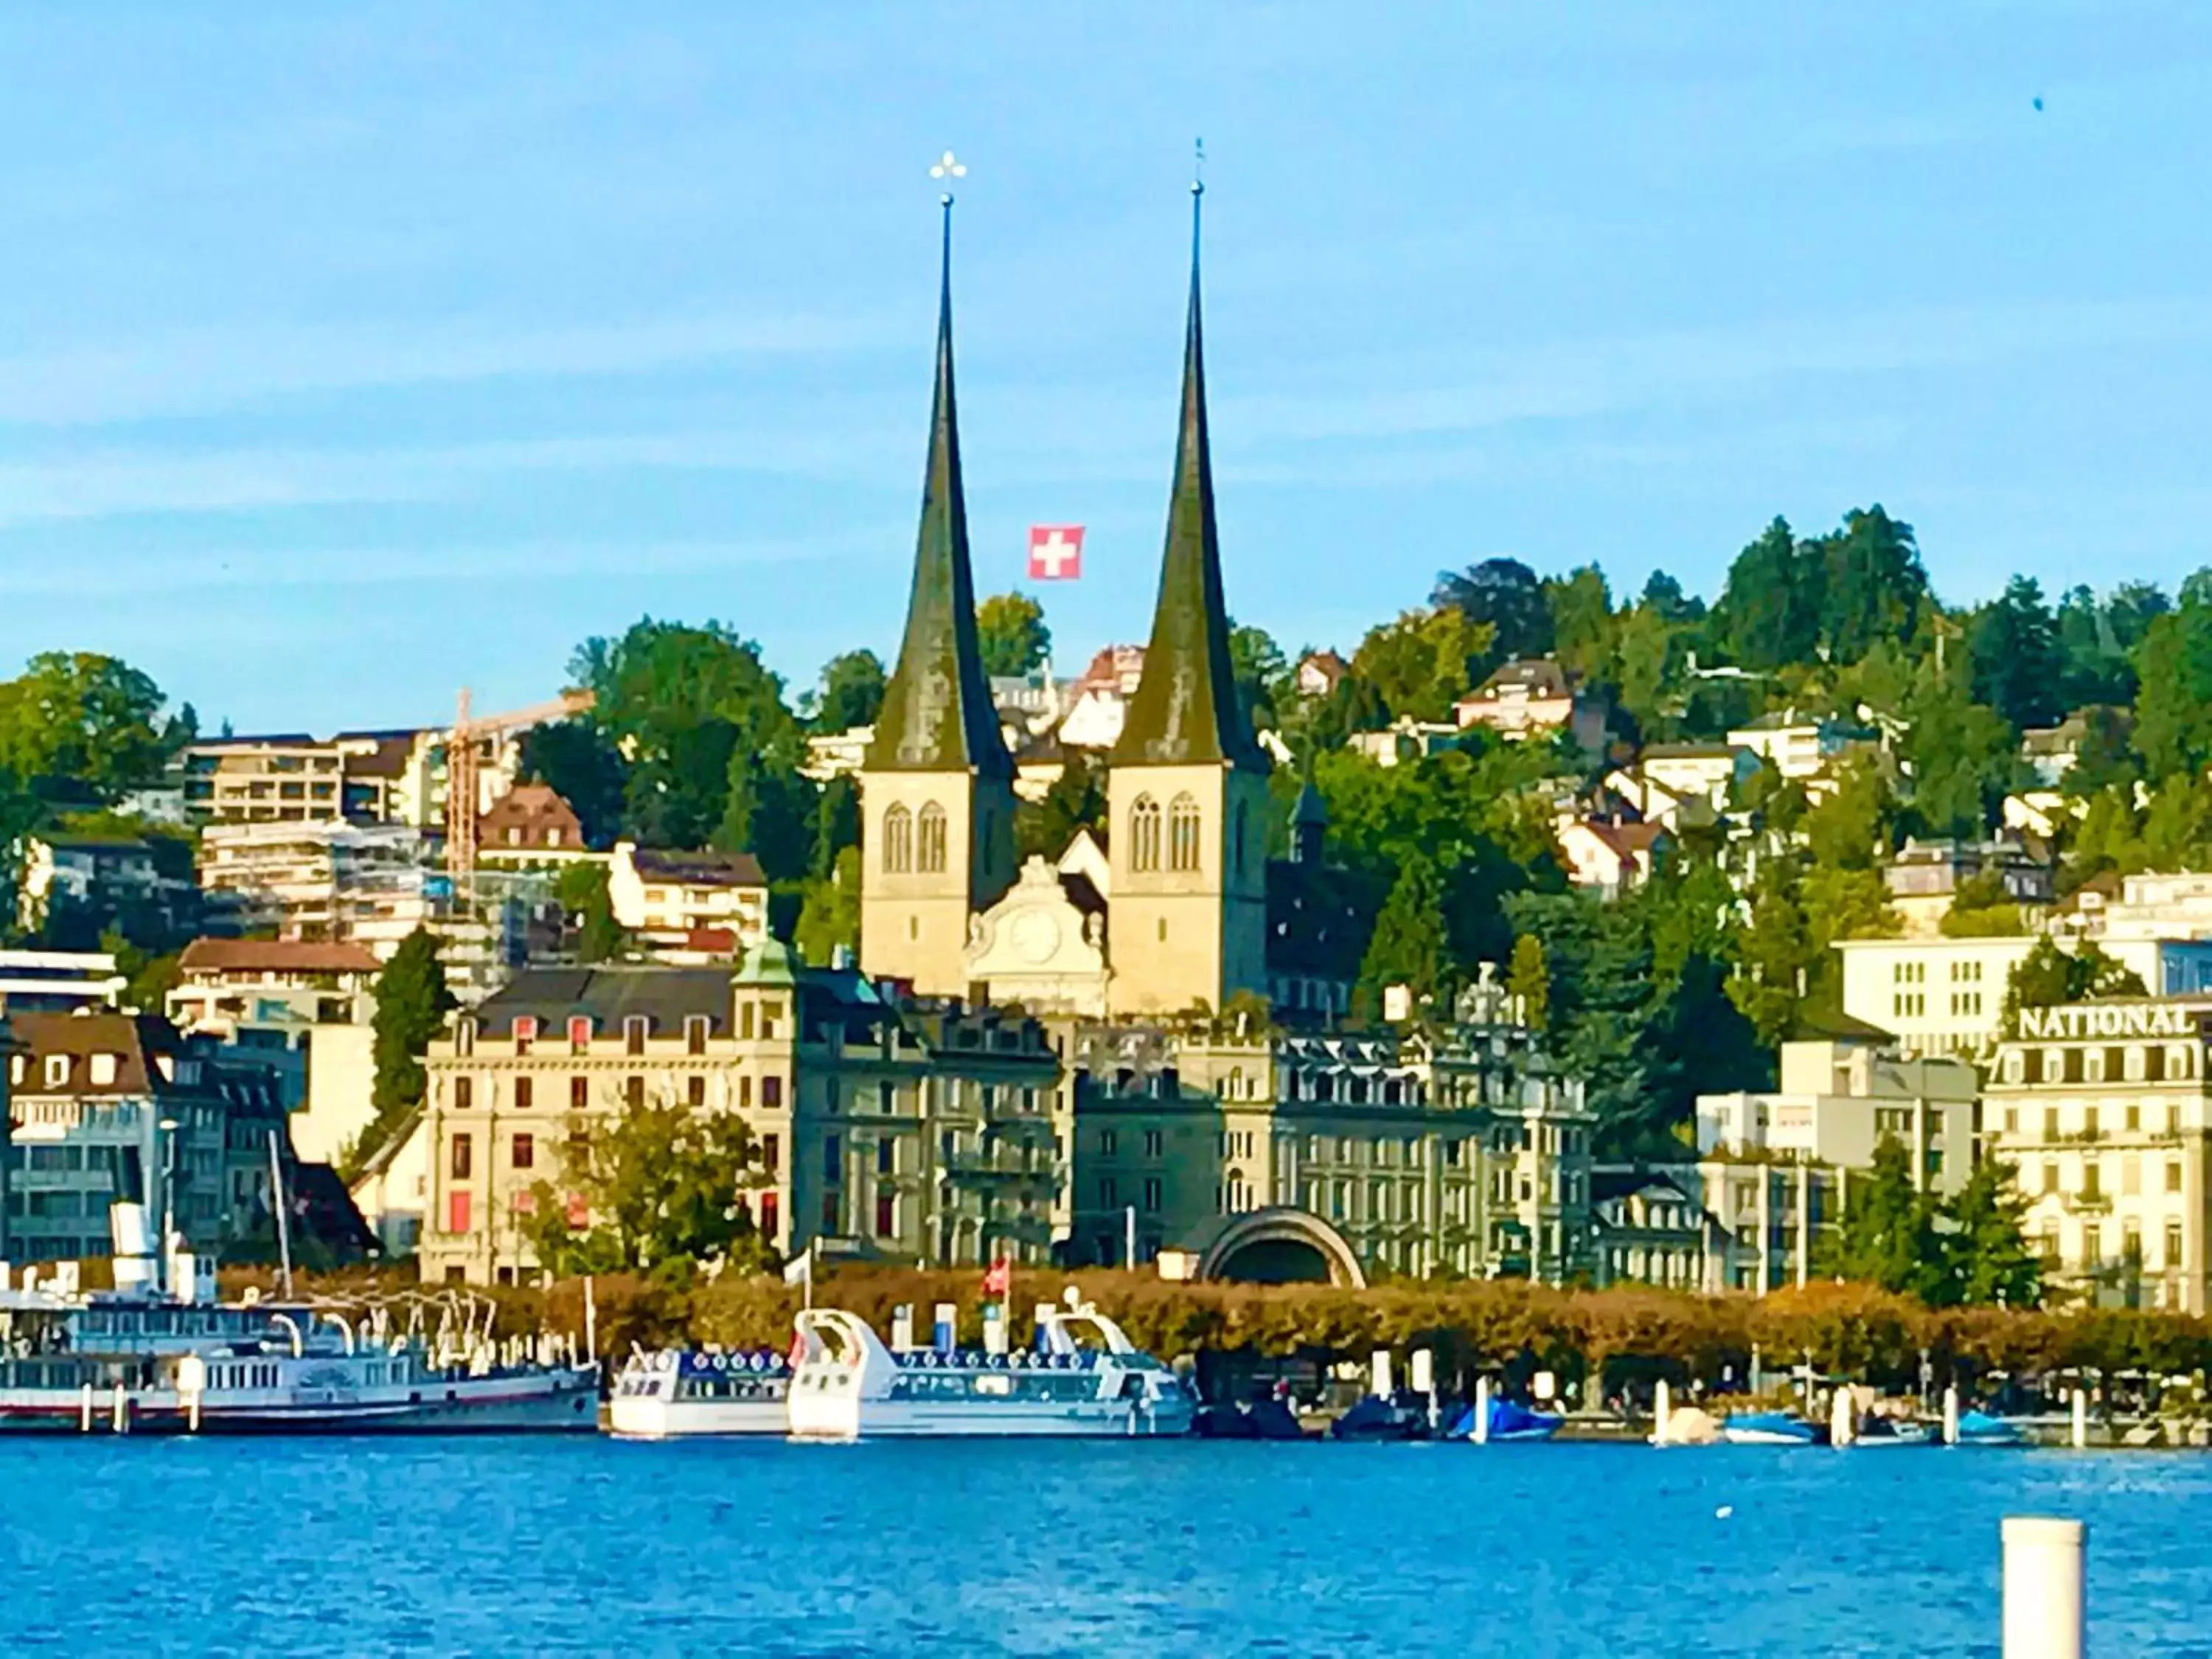 Nearby landmark in Hotel Monopol Luzern